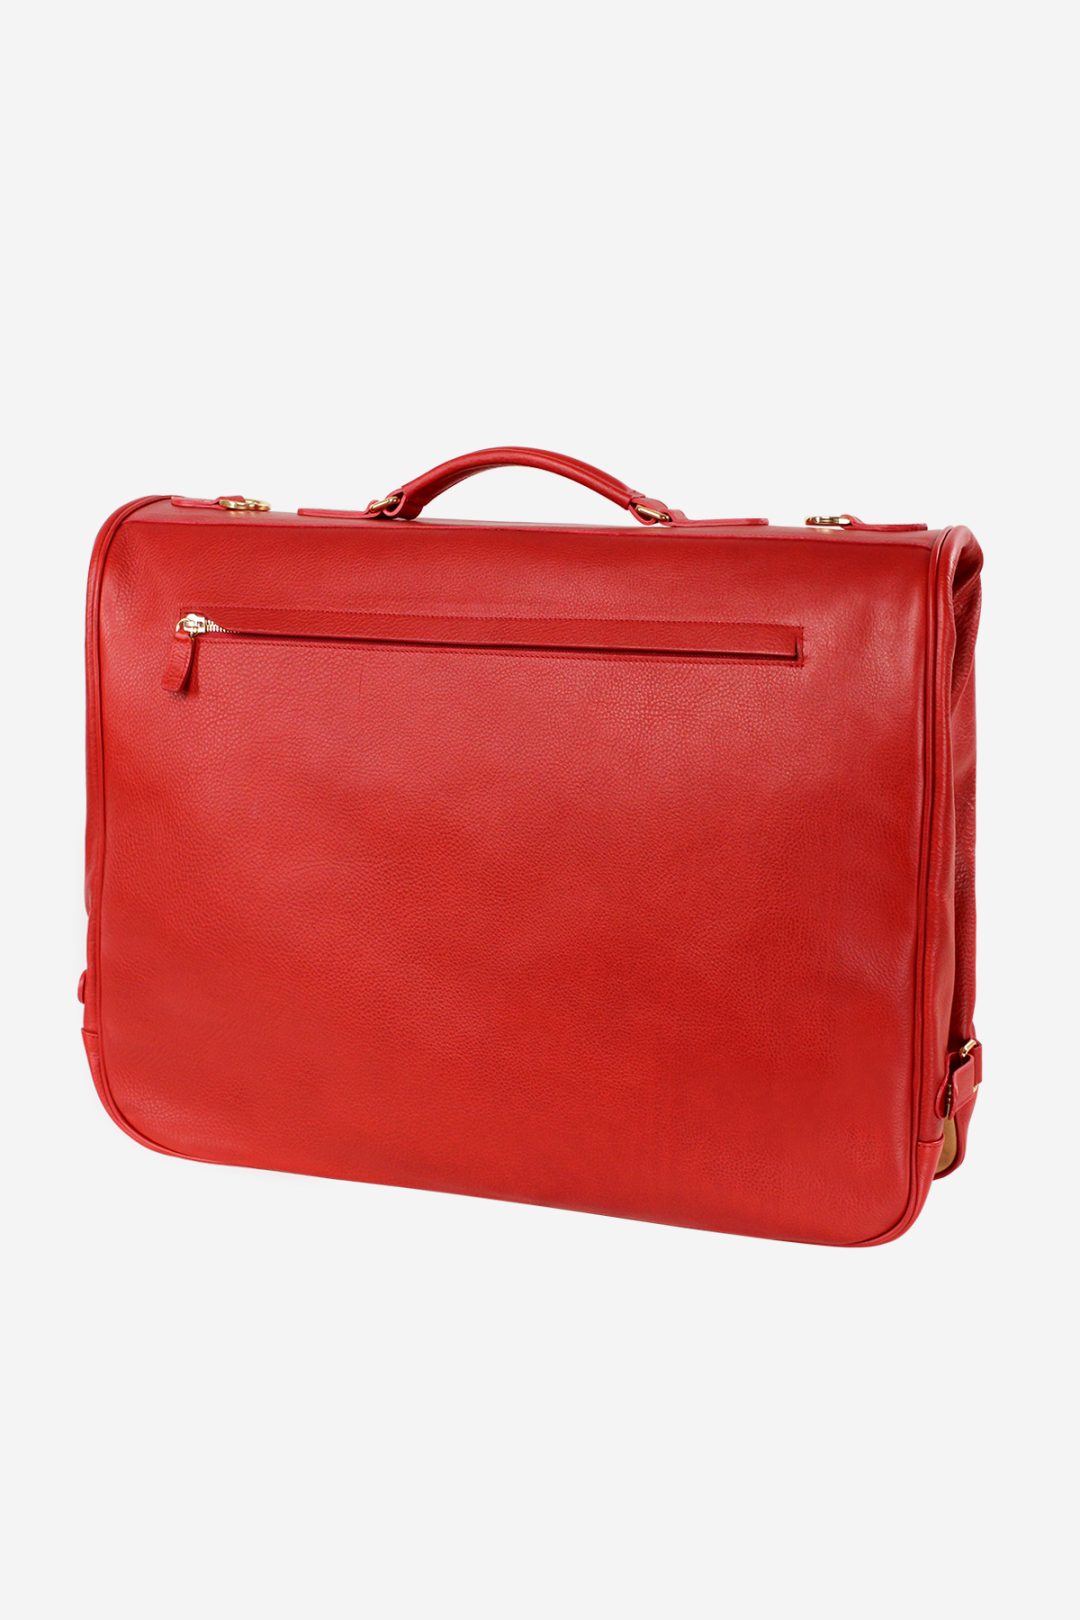 Leather hanging garment bag for travel lavander+dark red - 27958